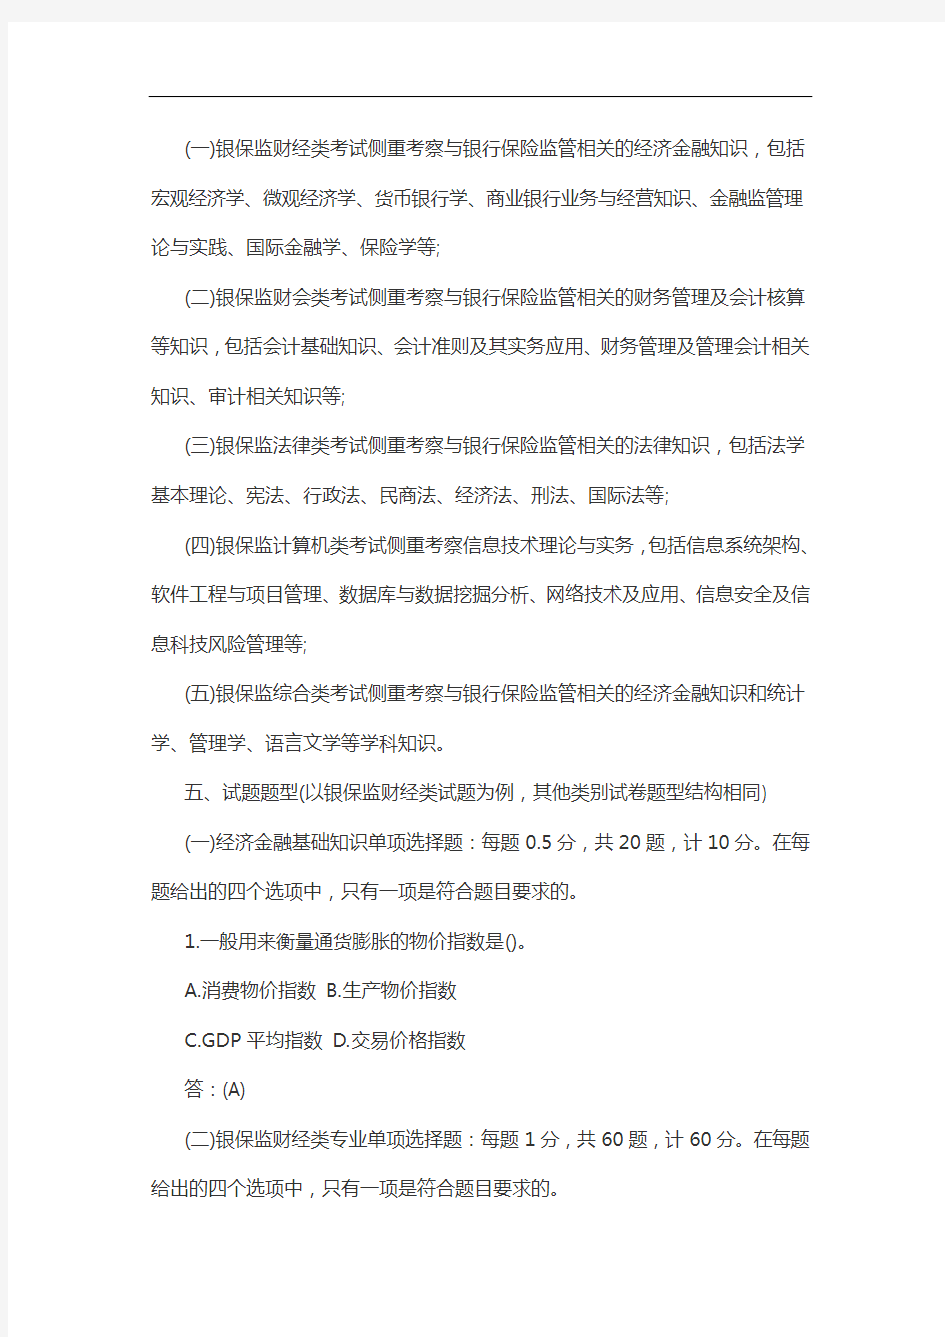 2021年度中国银保监会招考职位专业科目笔试考试大纲